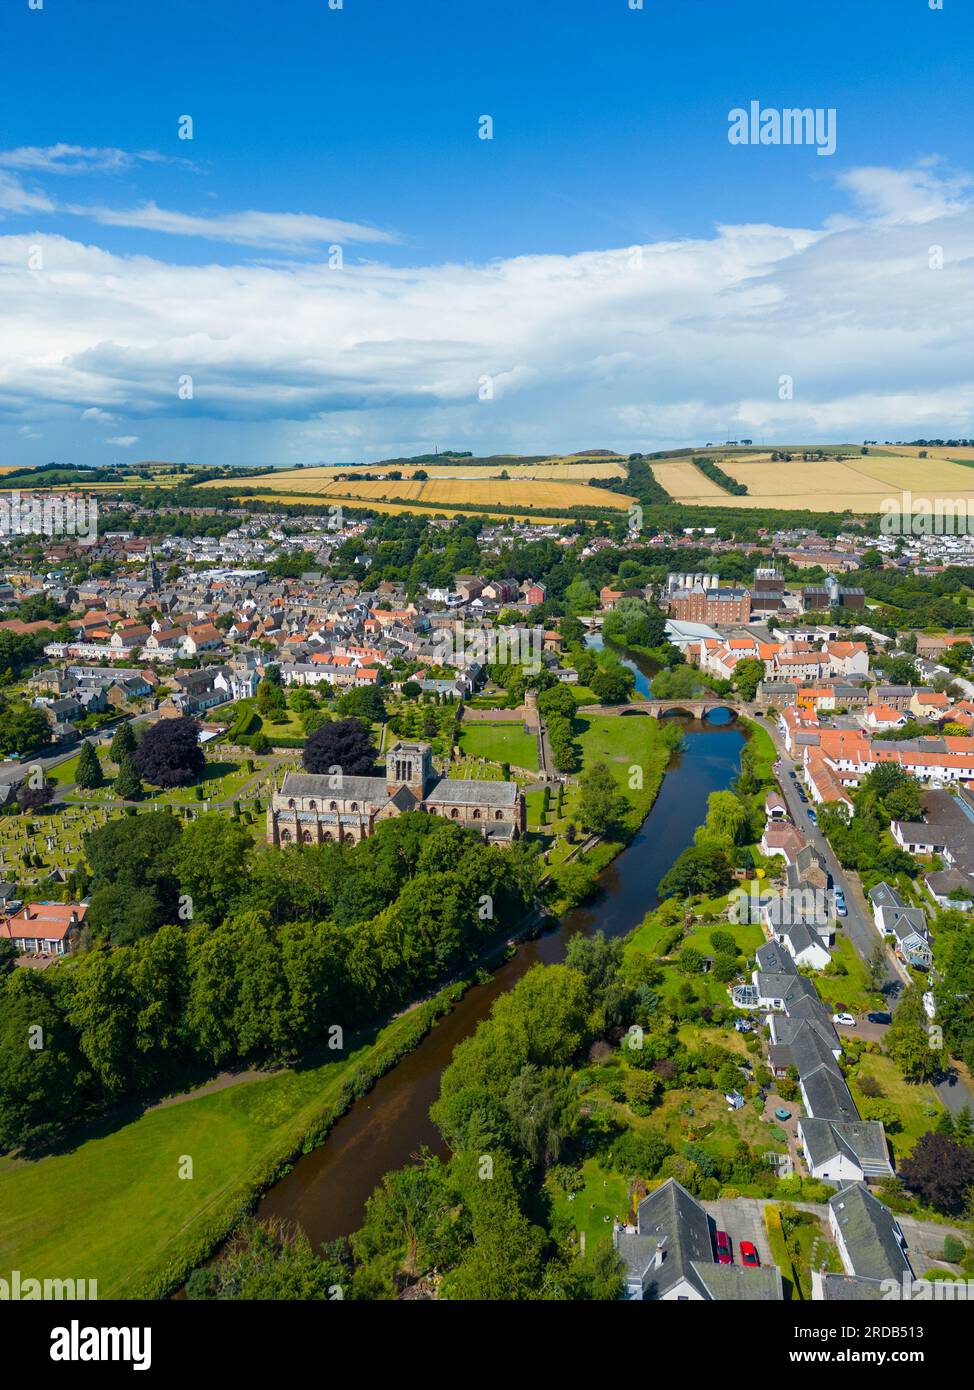 Vista aerea della città di Haddington sul fiume Tyne nell'East Lothian, Scozia, Regno Unito Foto Stock